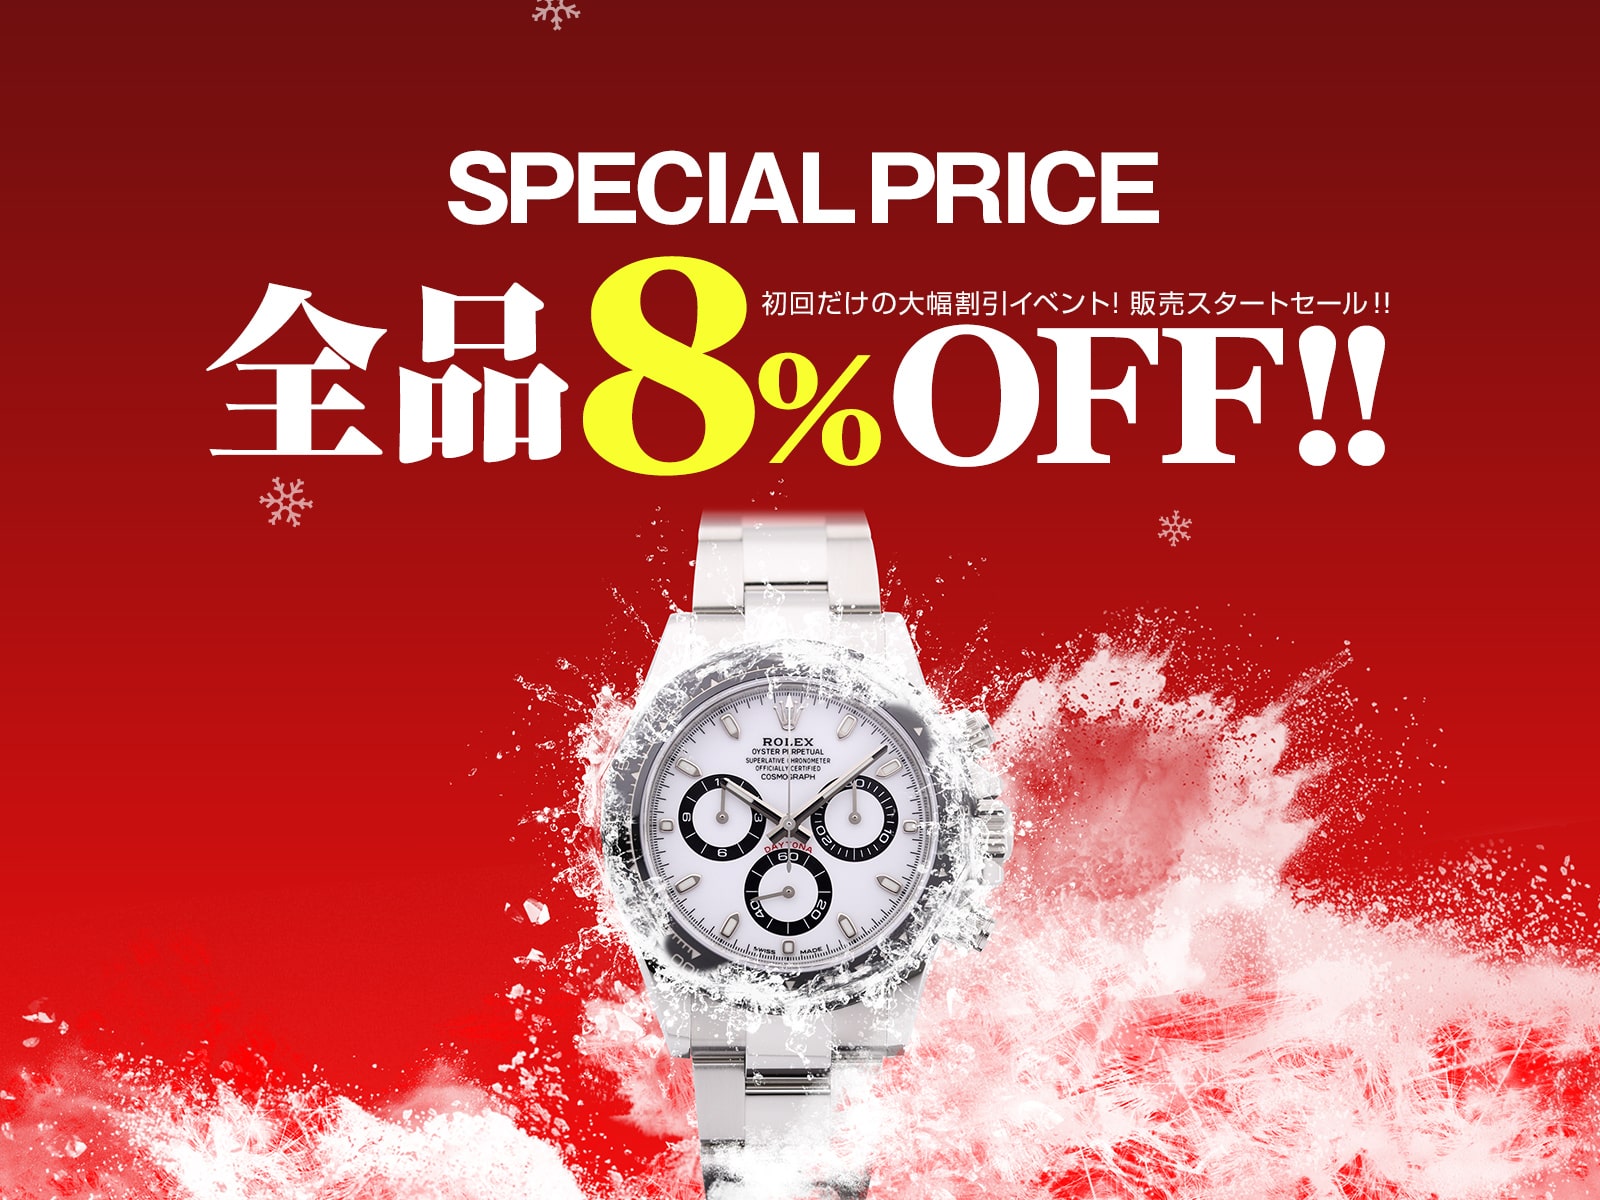 ロレックスやセイコー等のブランド時計 販売価格が通常より全品8 Offに 東京中野区の腕時計専門店アンティグランデが販売を開始 これを記念し 販売スタートセール を開催 株式会社altomareのプレスリリース